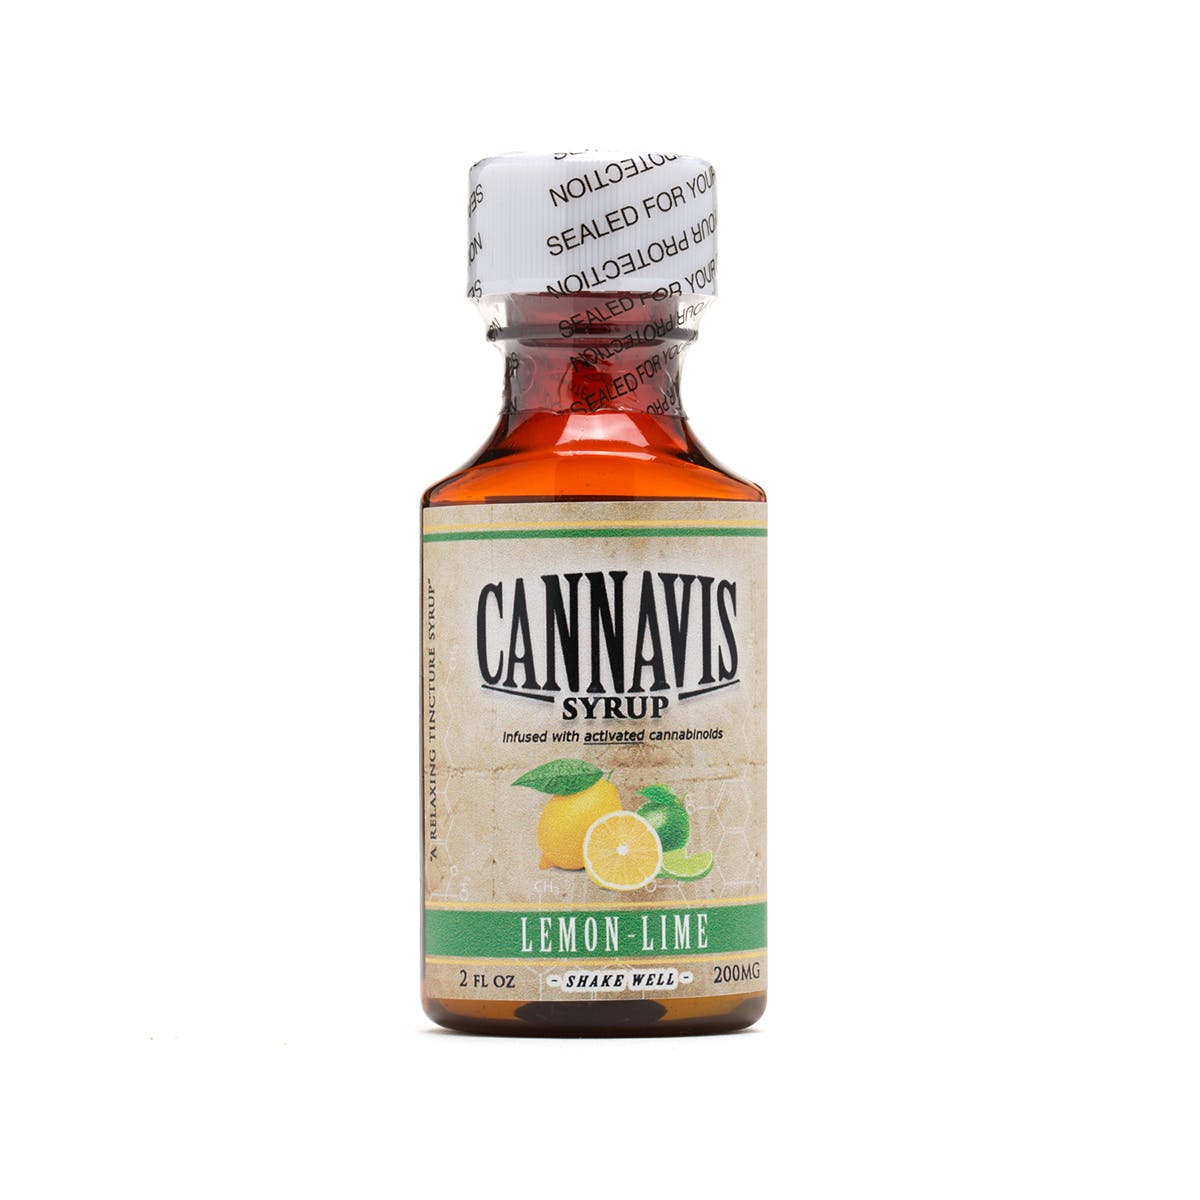 marijuana-dispensaries-lol-20-cap-in-rialto-cannavis-syrup-2c-lemon-lime-200mg